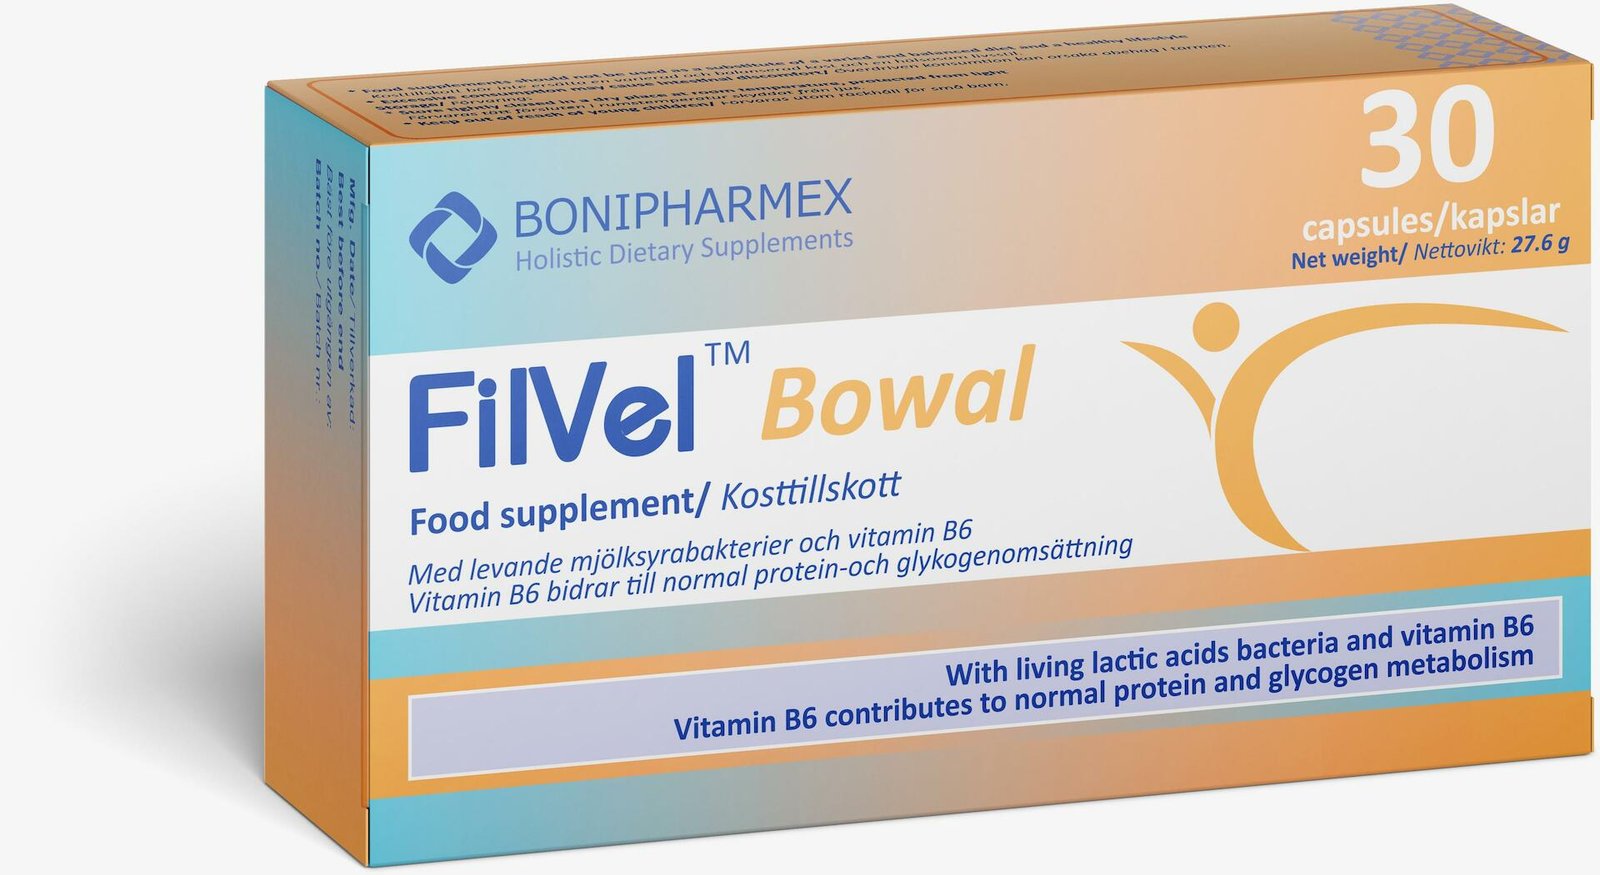 FilVel Bowal 30 kapslar